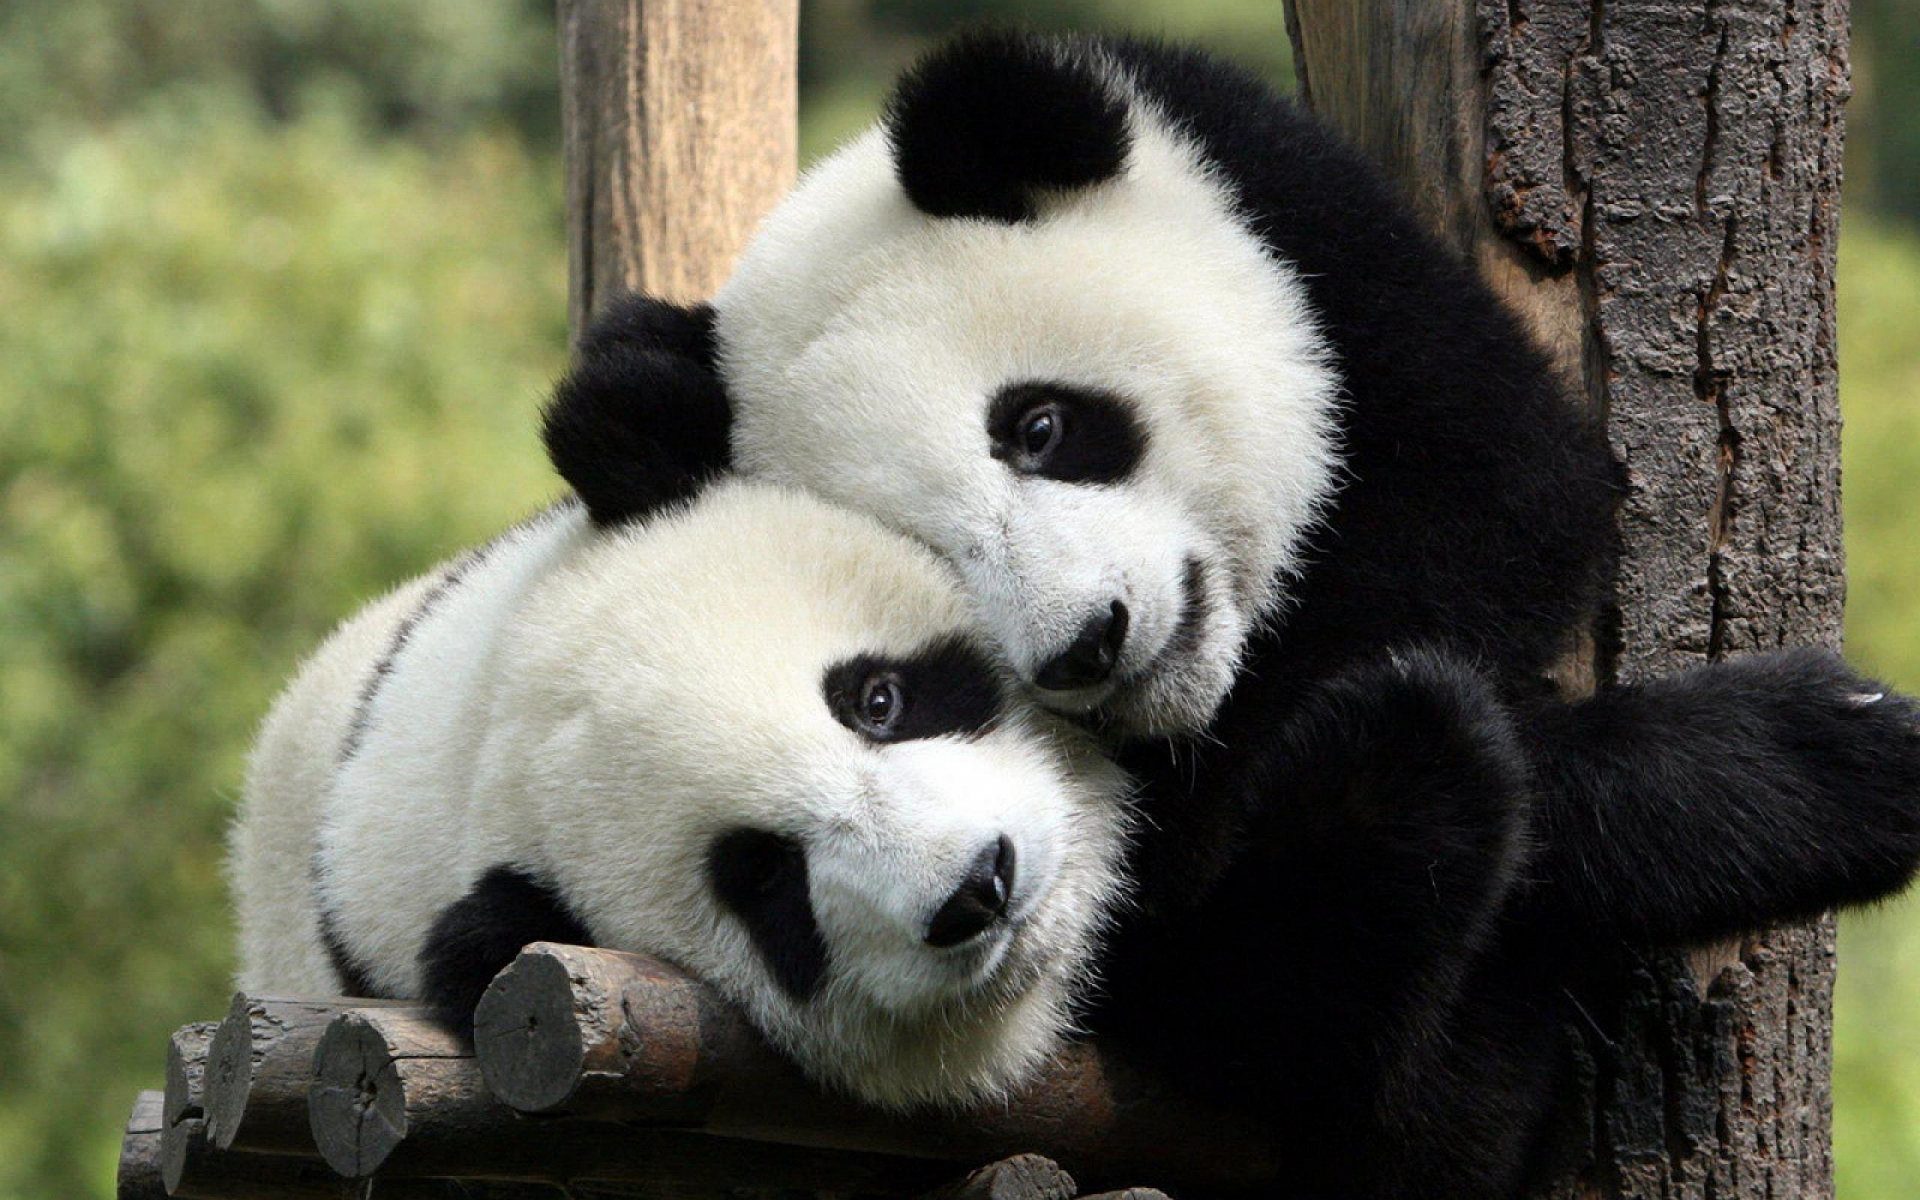 Vječita naučna svađa: Jesu li slatke pande medvjedi ili ne? - CdM